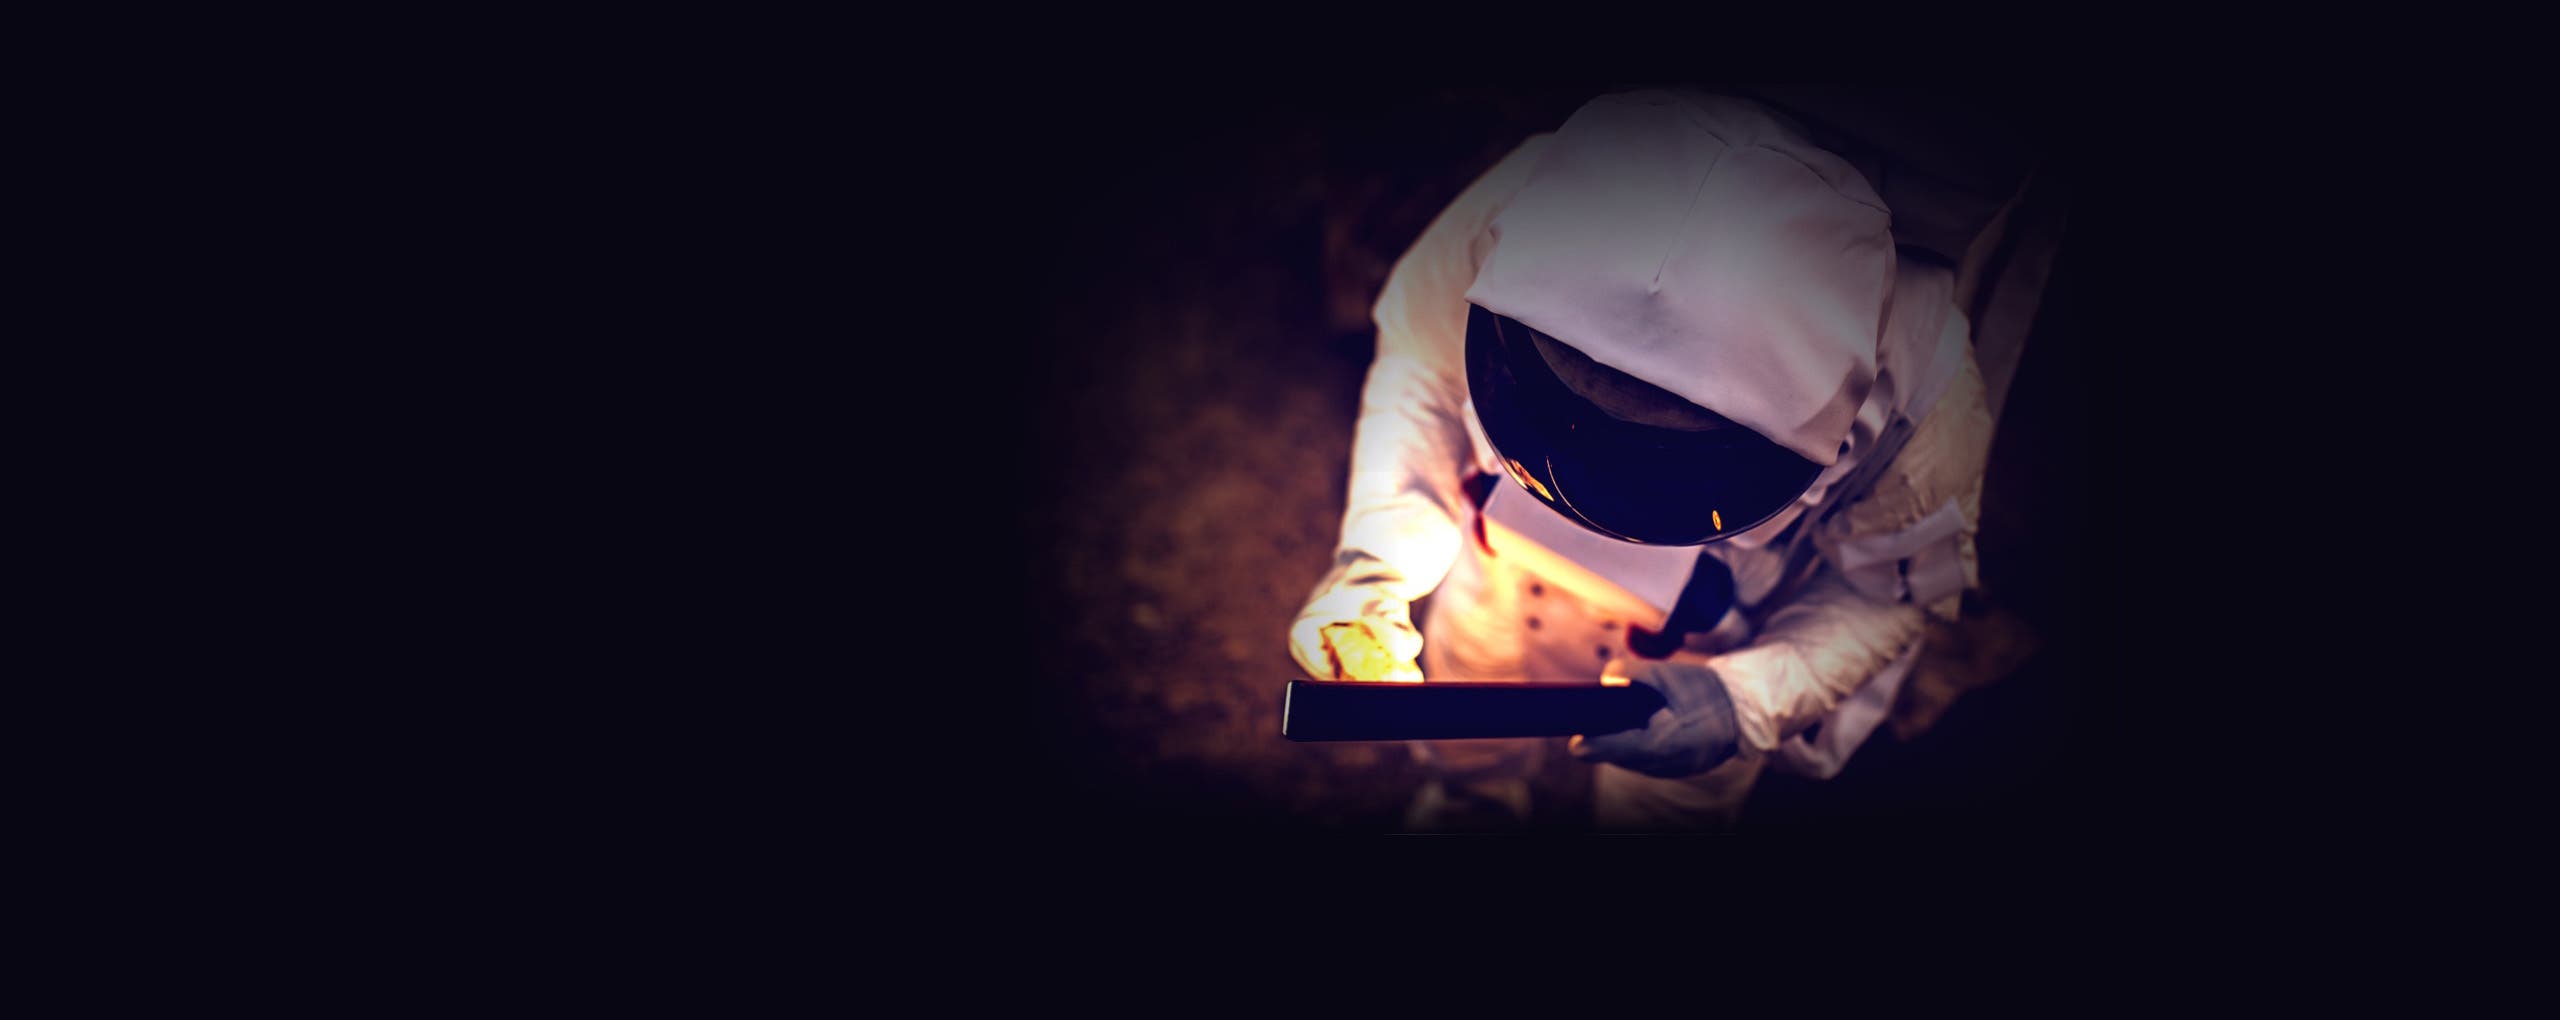 Astronaut holding an illuminated object background image